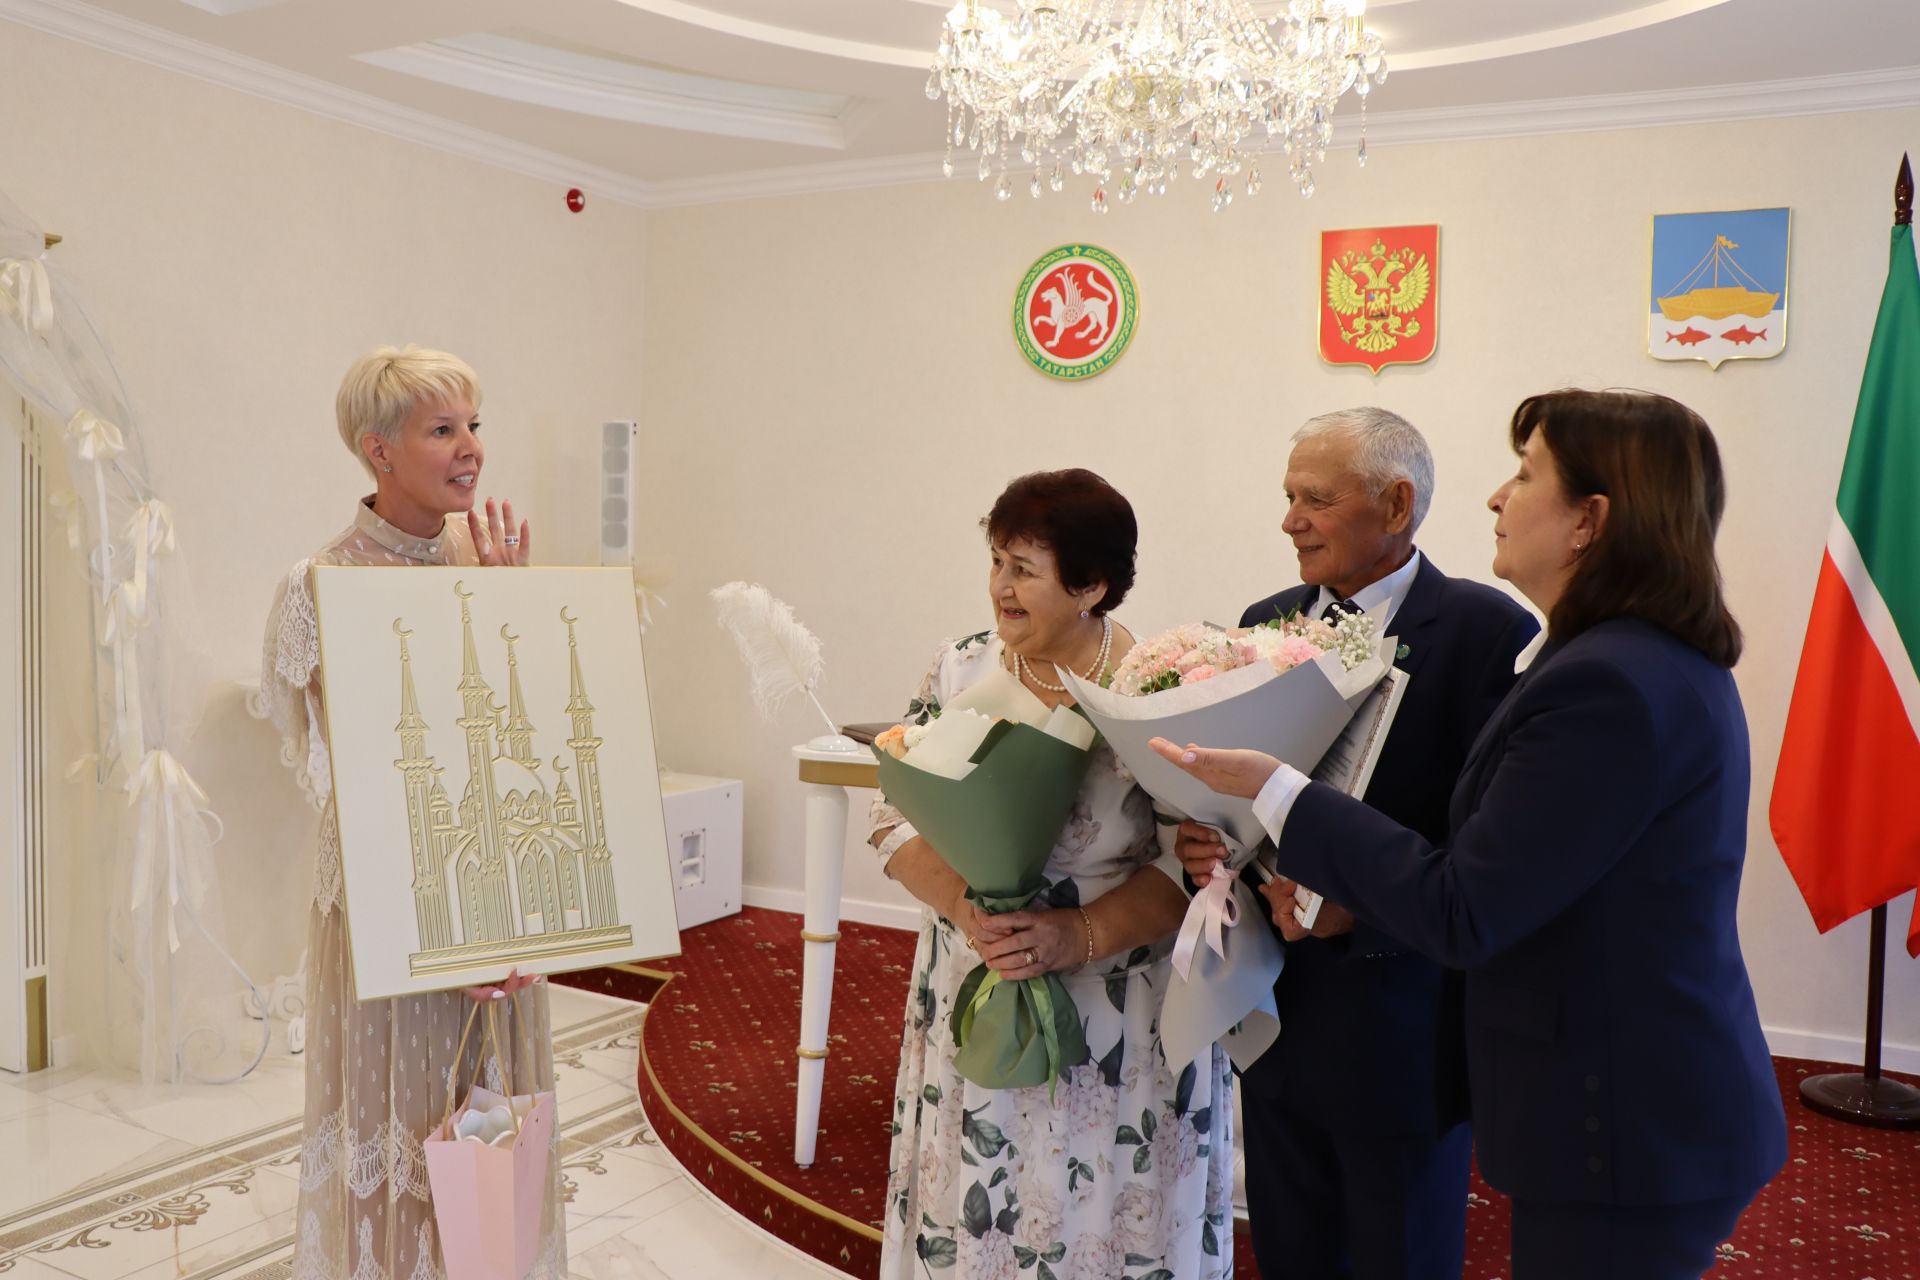 Полвека вместе рука об руку: жители Лаишевского района Данис и Талия отмечают золотую свадьбу